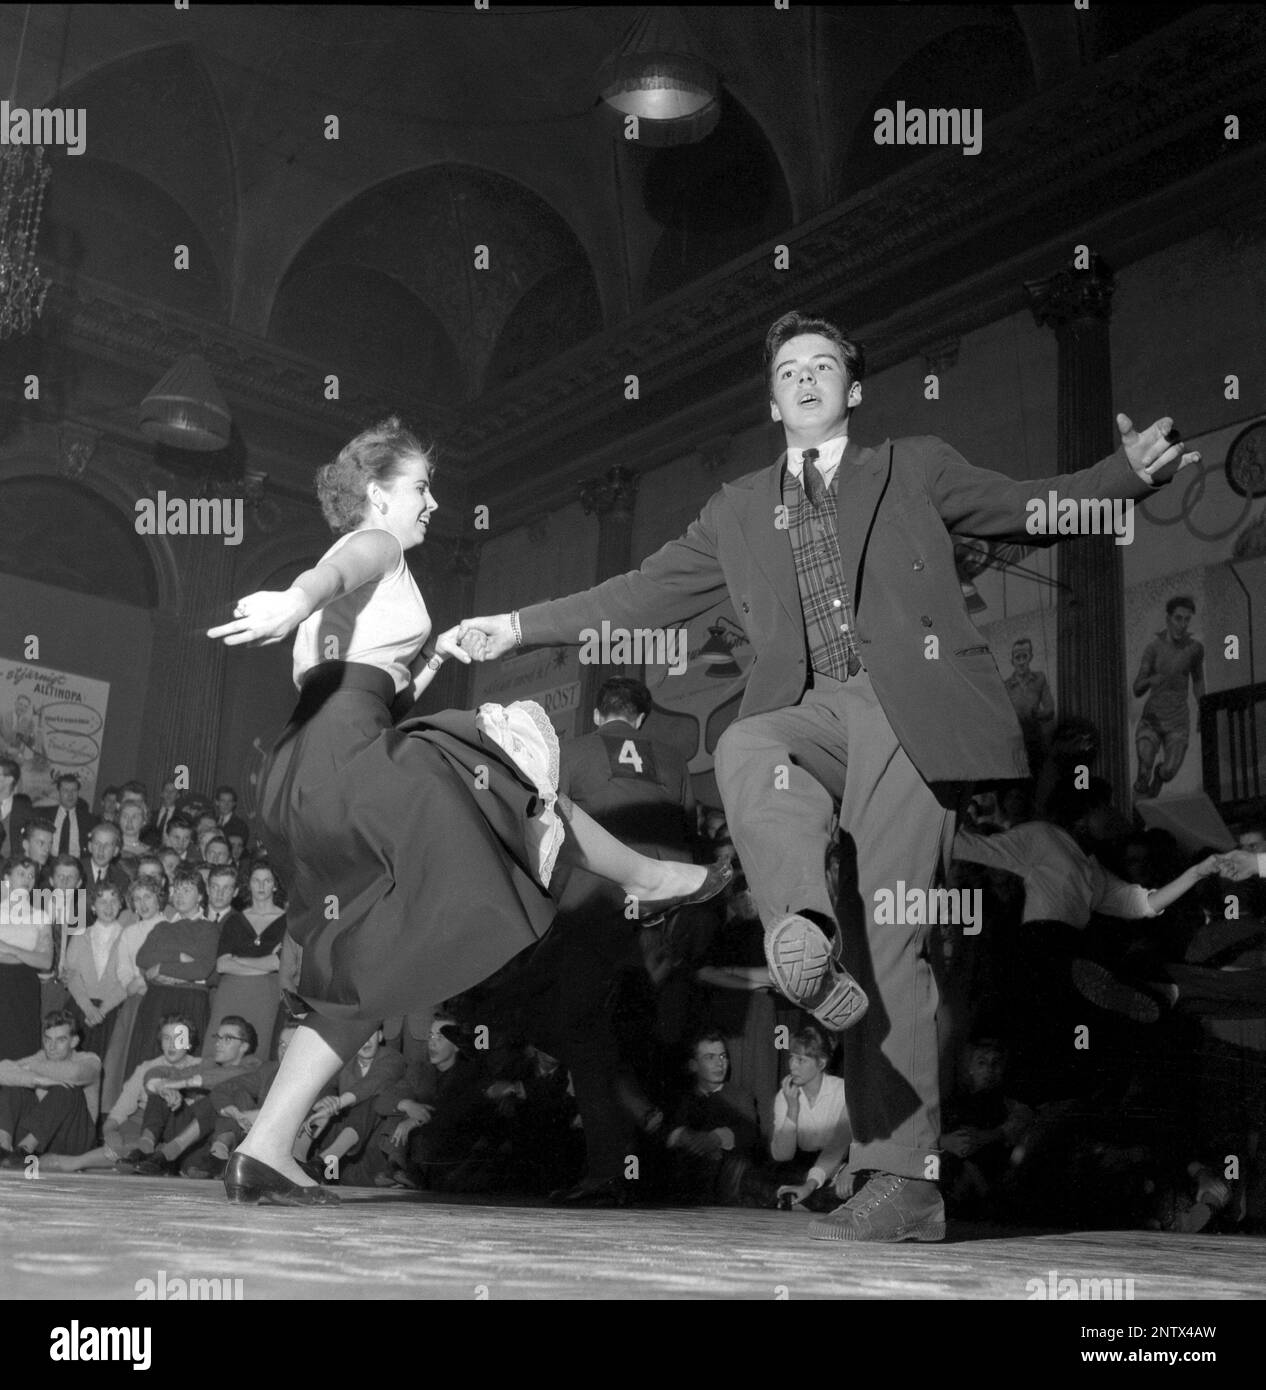 Tanzen in den 1950er. Ein junges Paar wird auf der Tanzfläche von Nalen Stockholm gezeigt, das den Sluefoot tanzt. Tanzen im Sluefootcan kann zu den meisten Jazzbeständen gemacht werden, einige der Schritte in diesem Tanz werden als Slueing bezeichnet. Der Tanz bietet erhebliche Beinschwingungen, Armjabbing und Shuffling. Ein Tanz, der von den amerikanischen Tänzern Leslie Caron und Fred Astaire im Film Daddy Long Legs aus dem Jahr 1955 beliebt gemacht wurde. Schweden 1957 Conard Ref 3122 Stockfoto